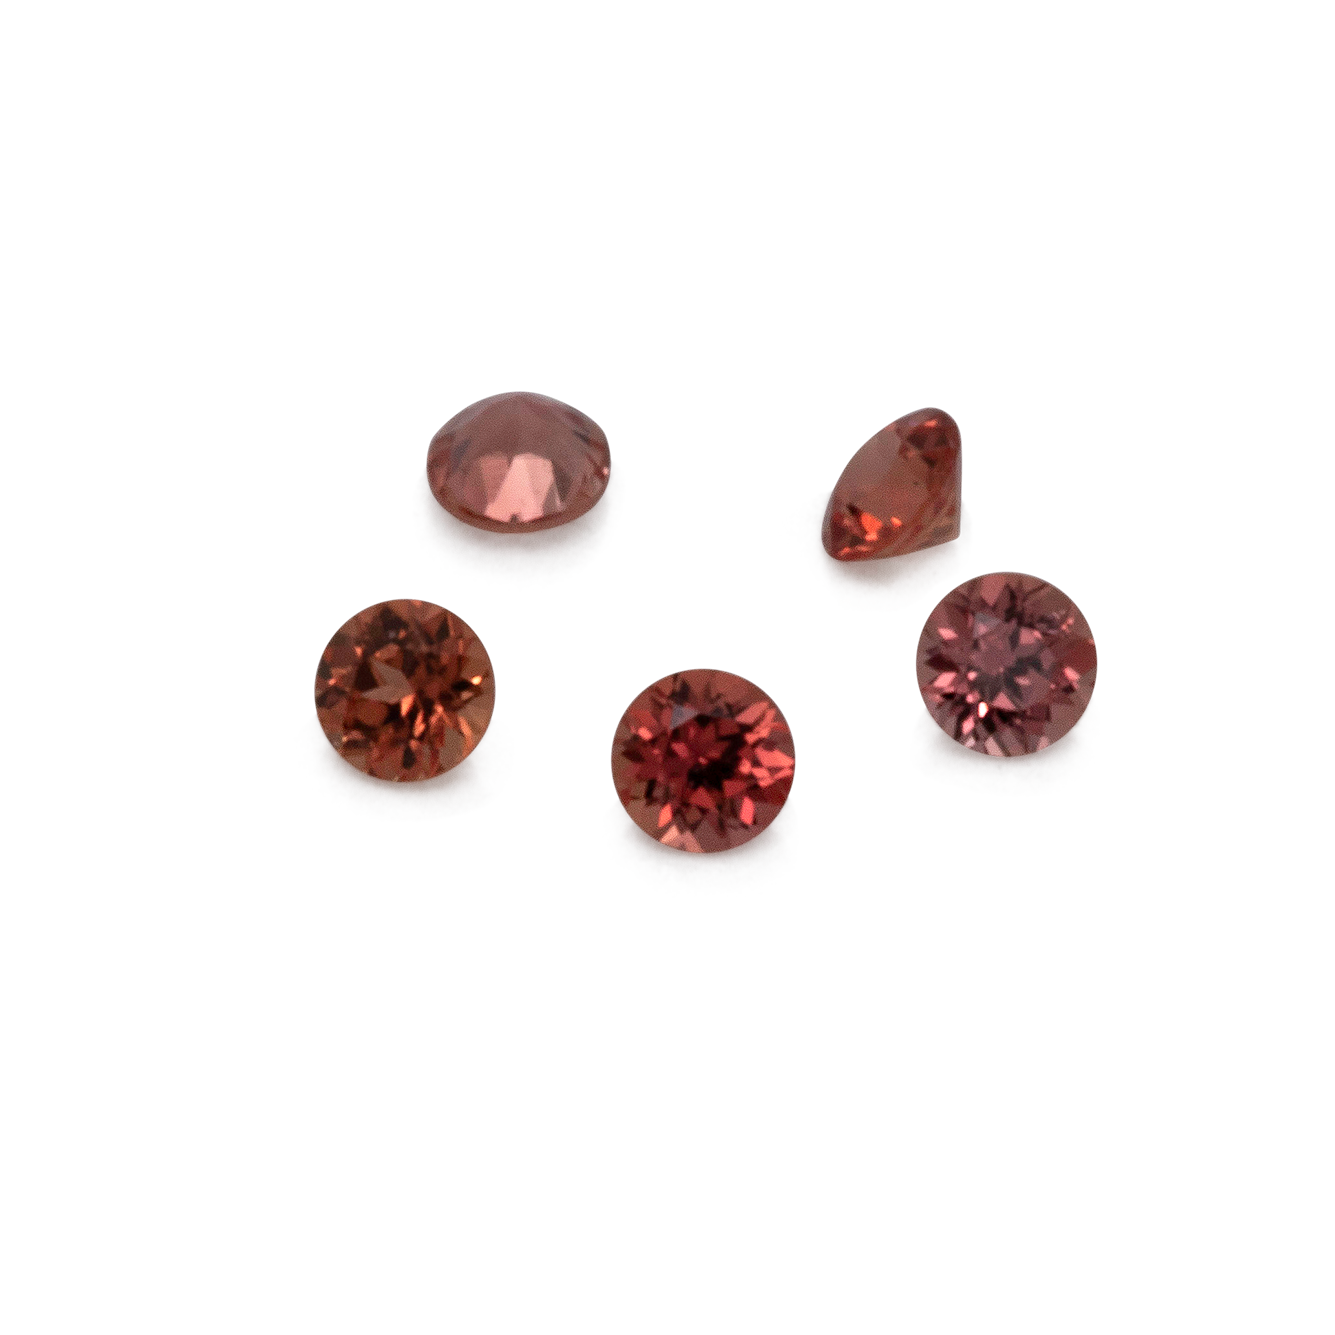 Saphir - orange/rot, rund, 1x1 mm, ca. 0,005 cts, Nr. XSR11147